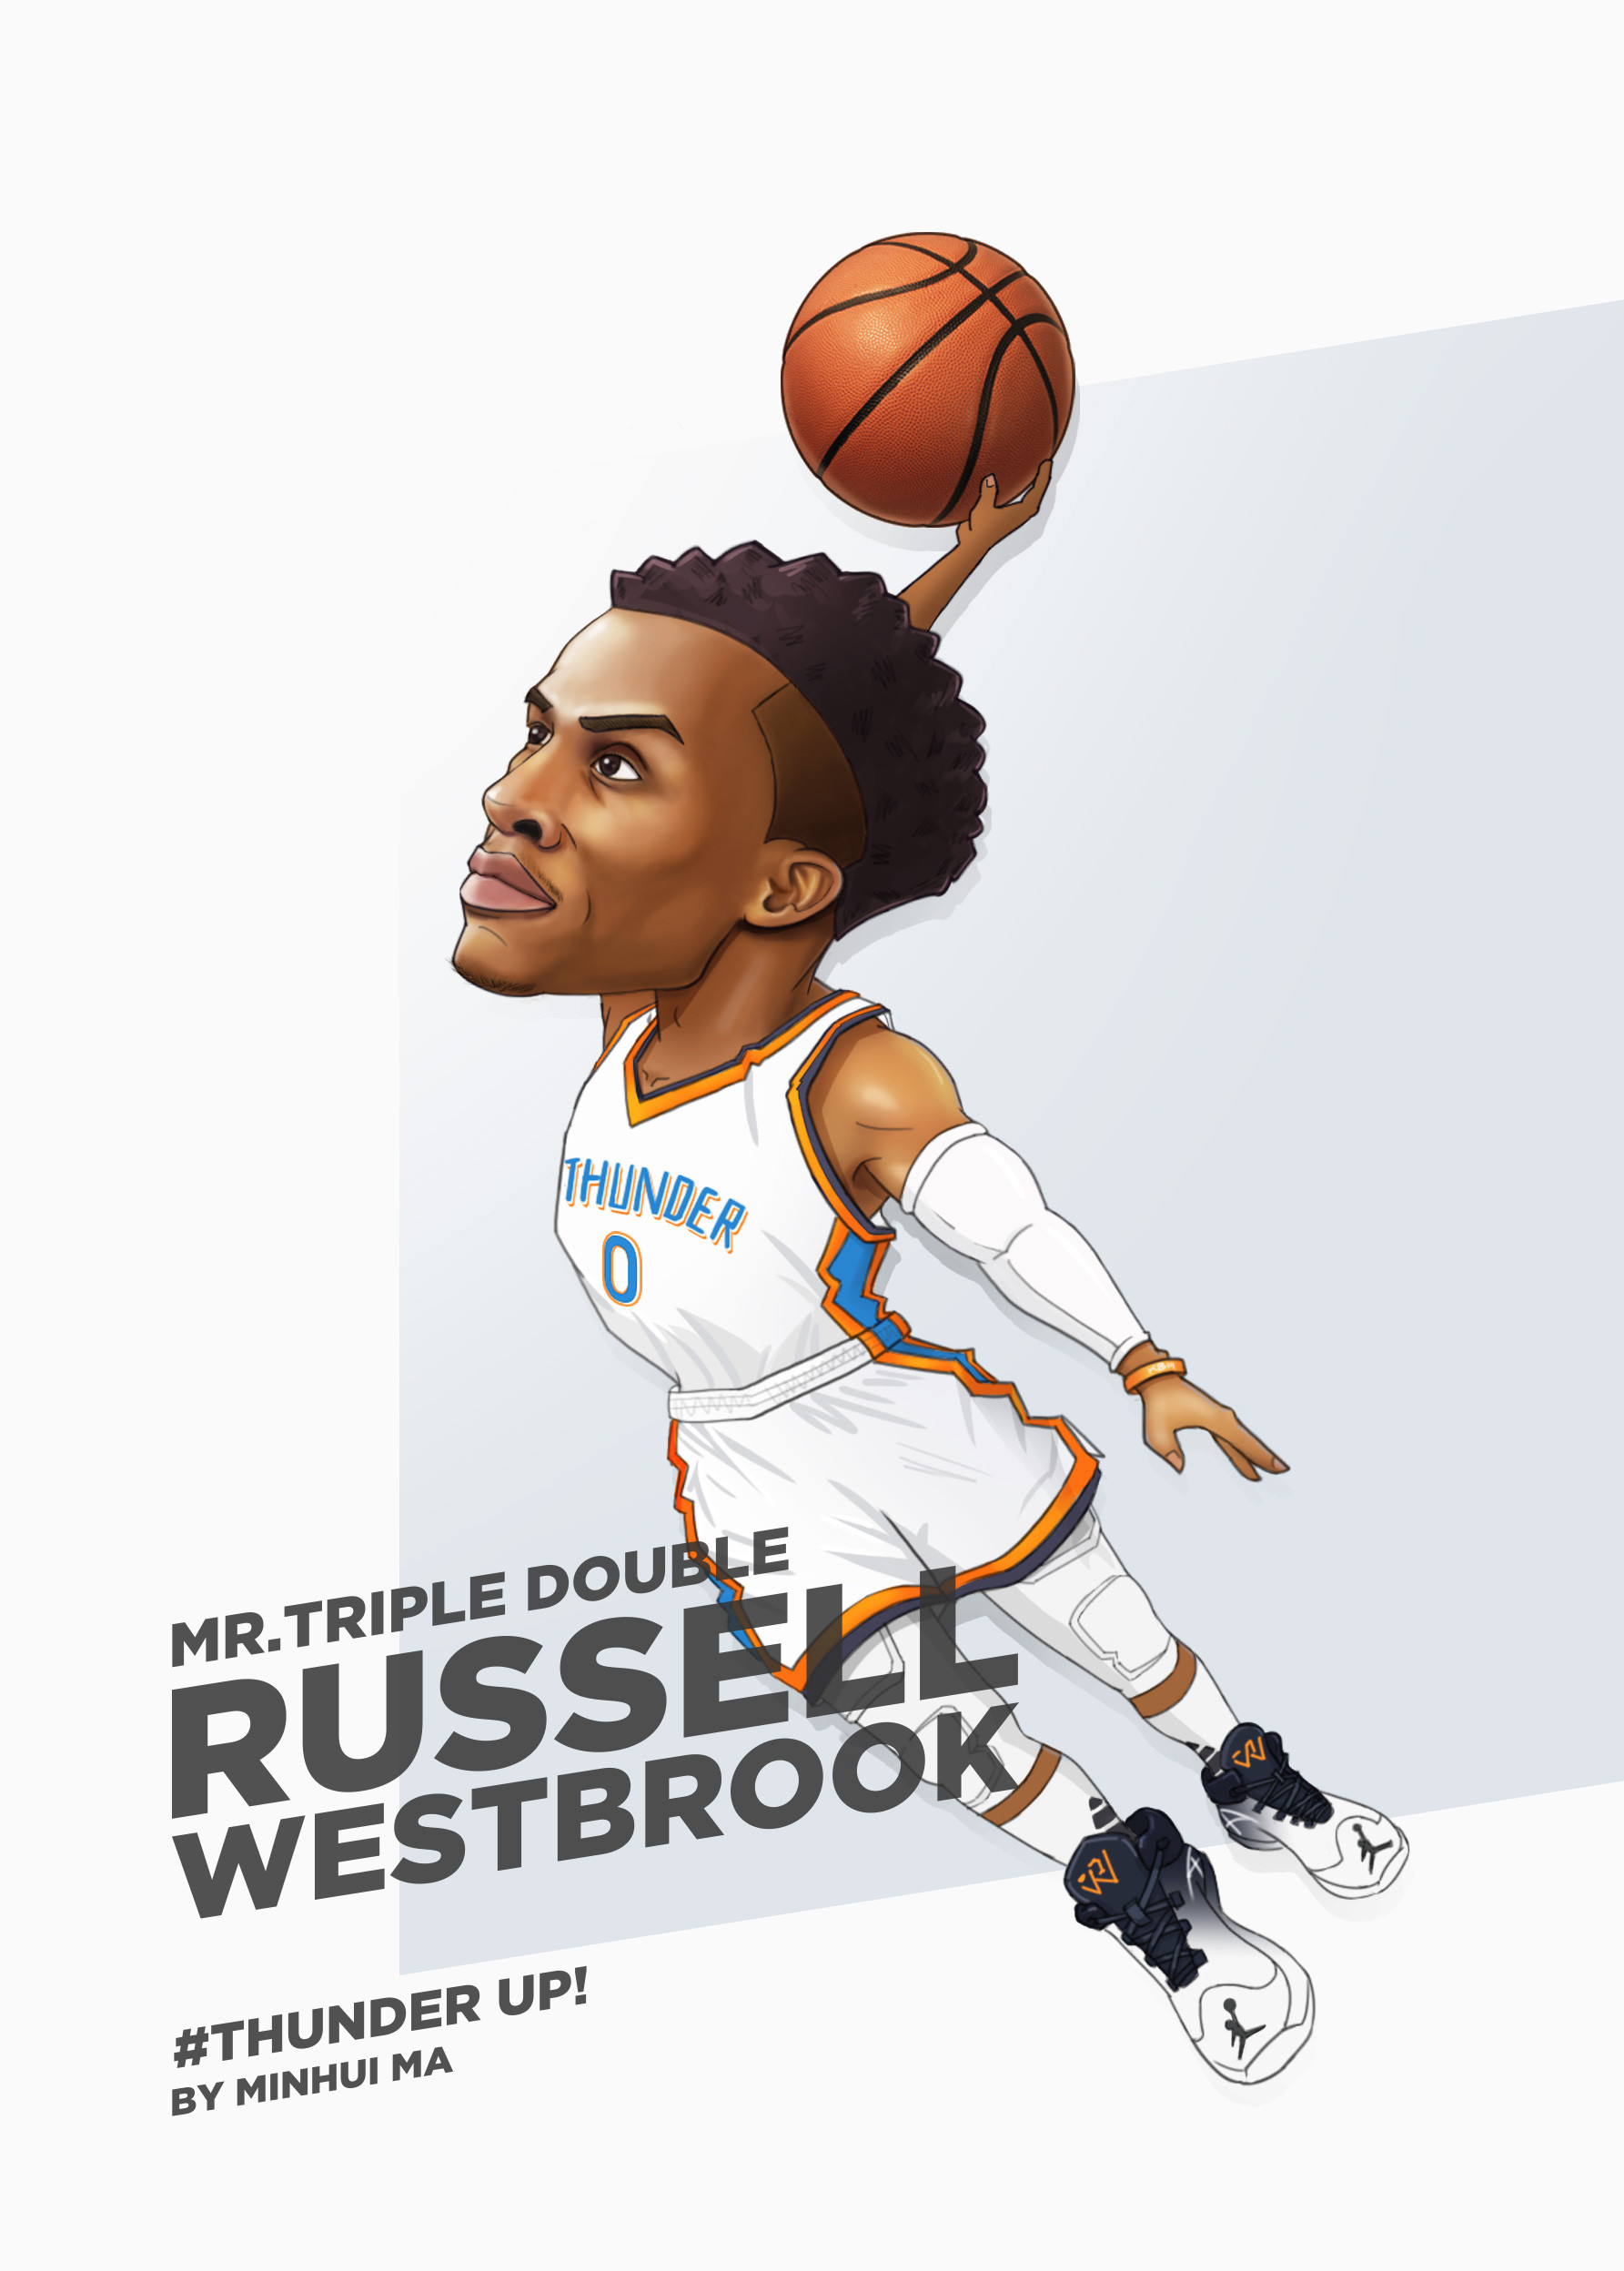 russell westbrook wallpaper,basketball player,basketball,basketball moves,basketball,cartoon